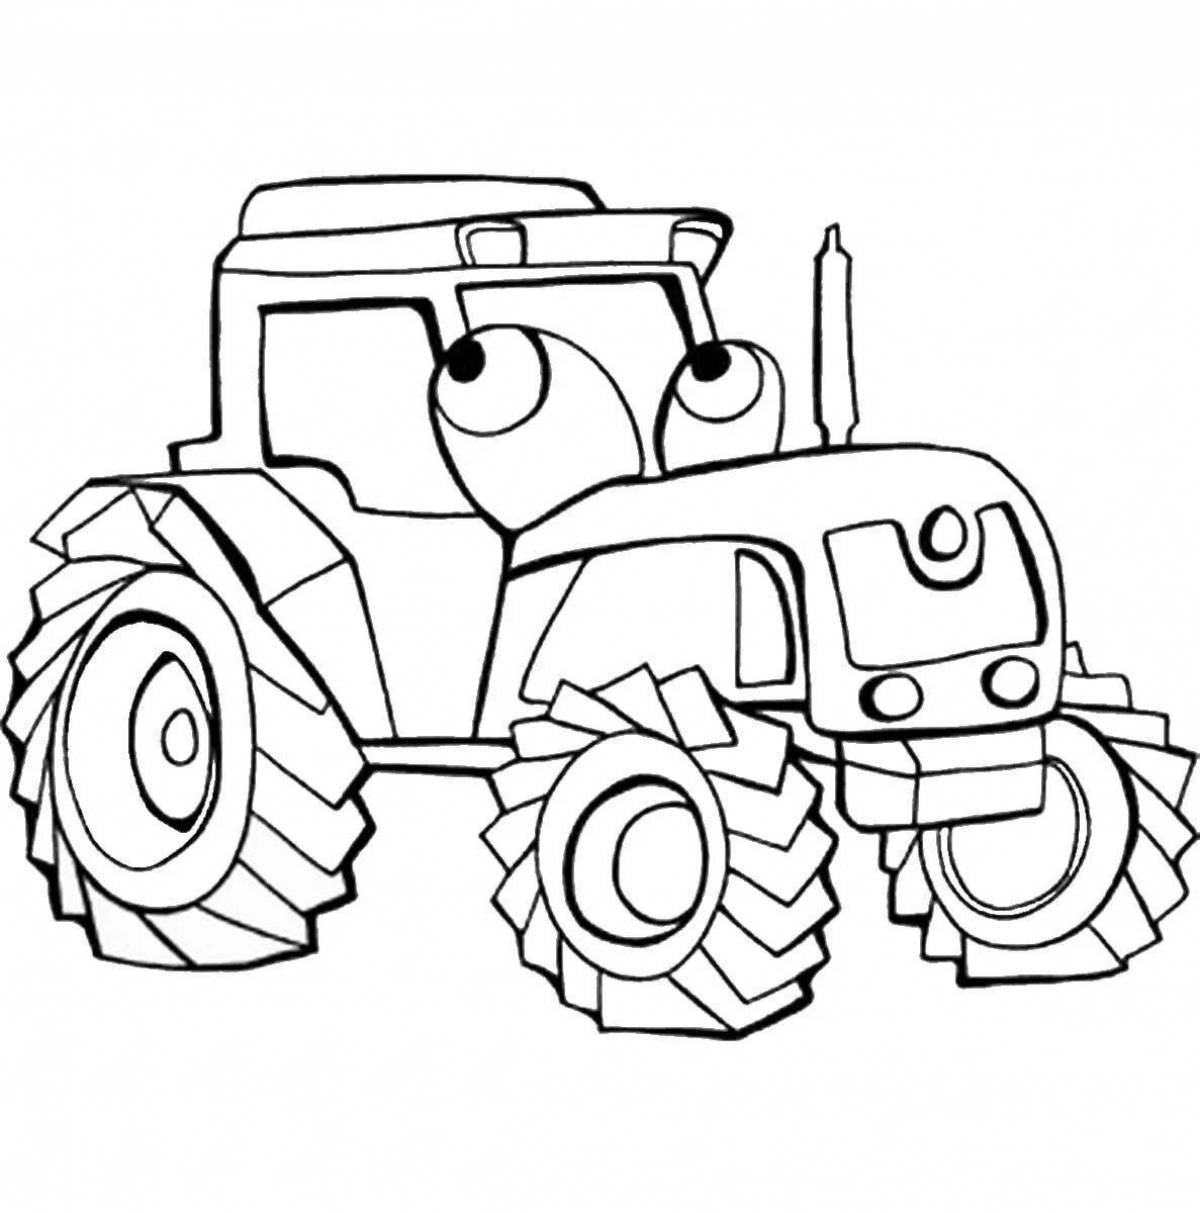 Привлекательная страница раскраски тракторной машины